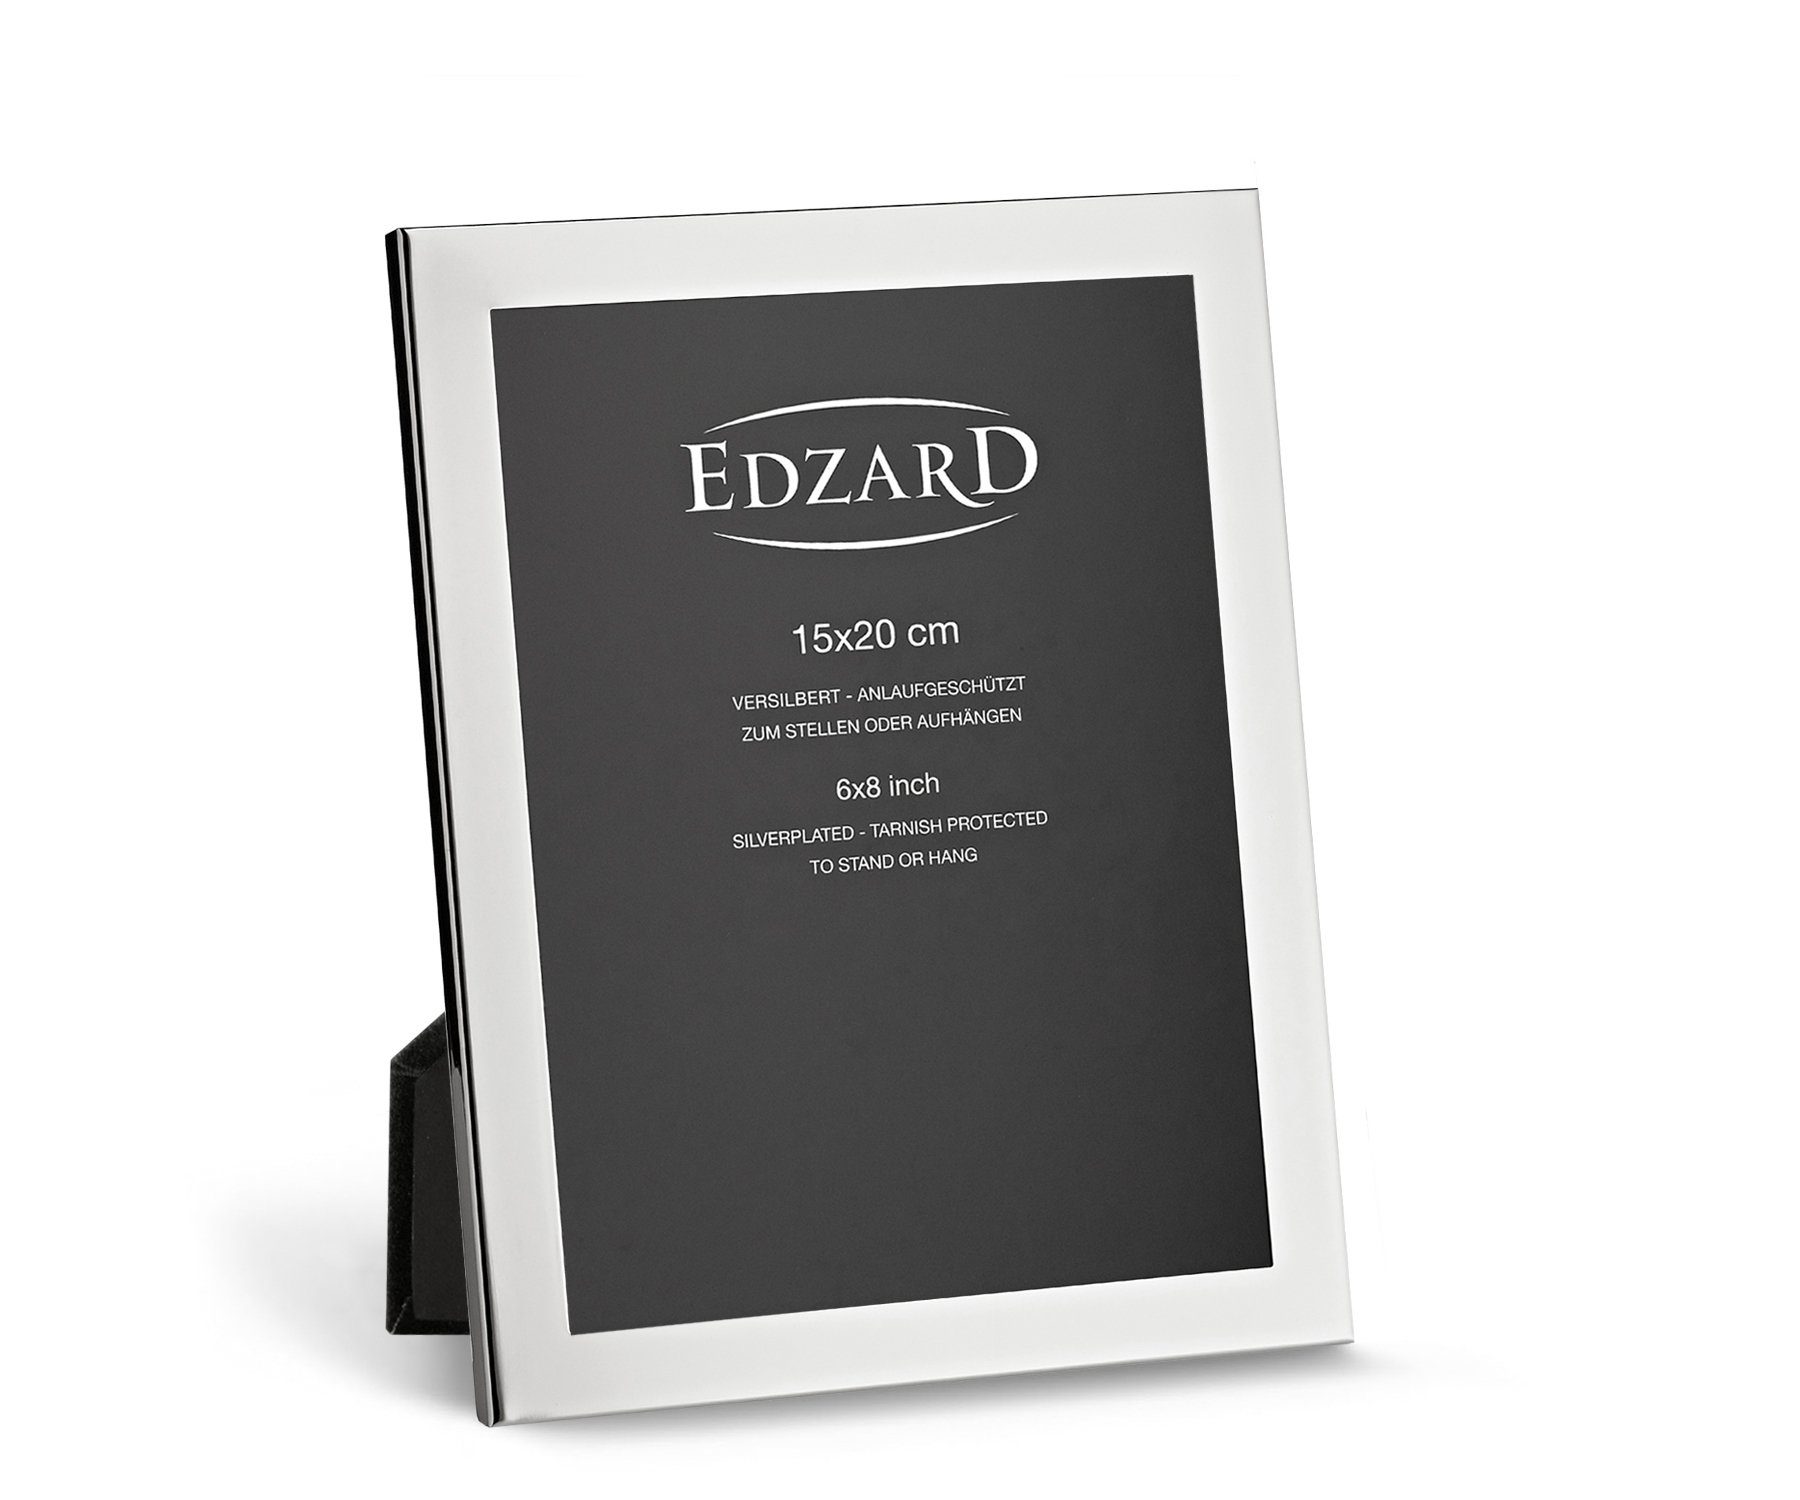 EDZARD Bilderrahmen Prato, versilbert und anlaufgeschützt, für 15x20 cm Bilder – Fotorahmen | Einzelrahmen